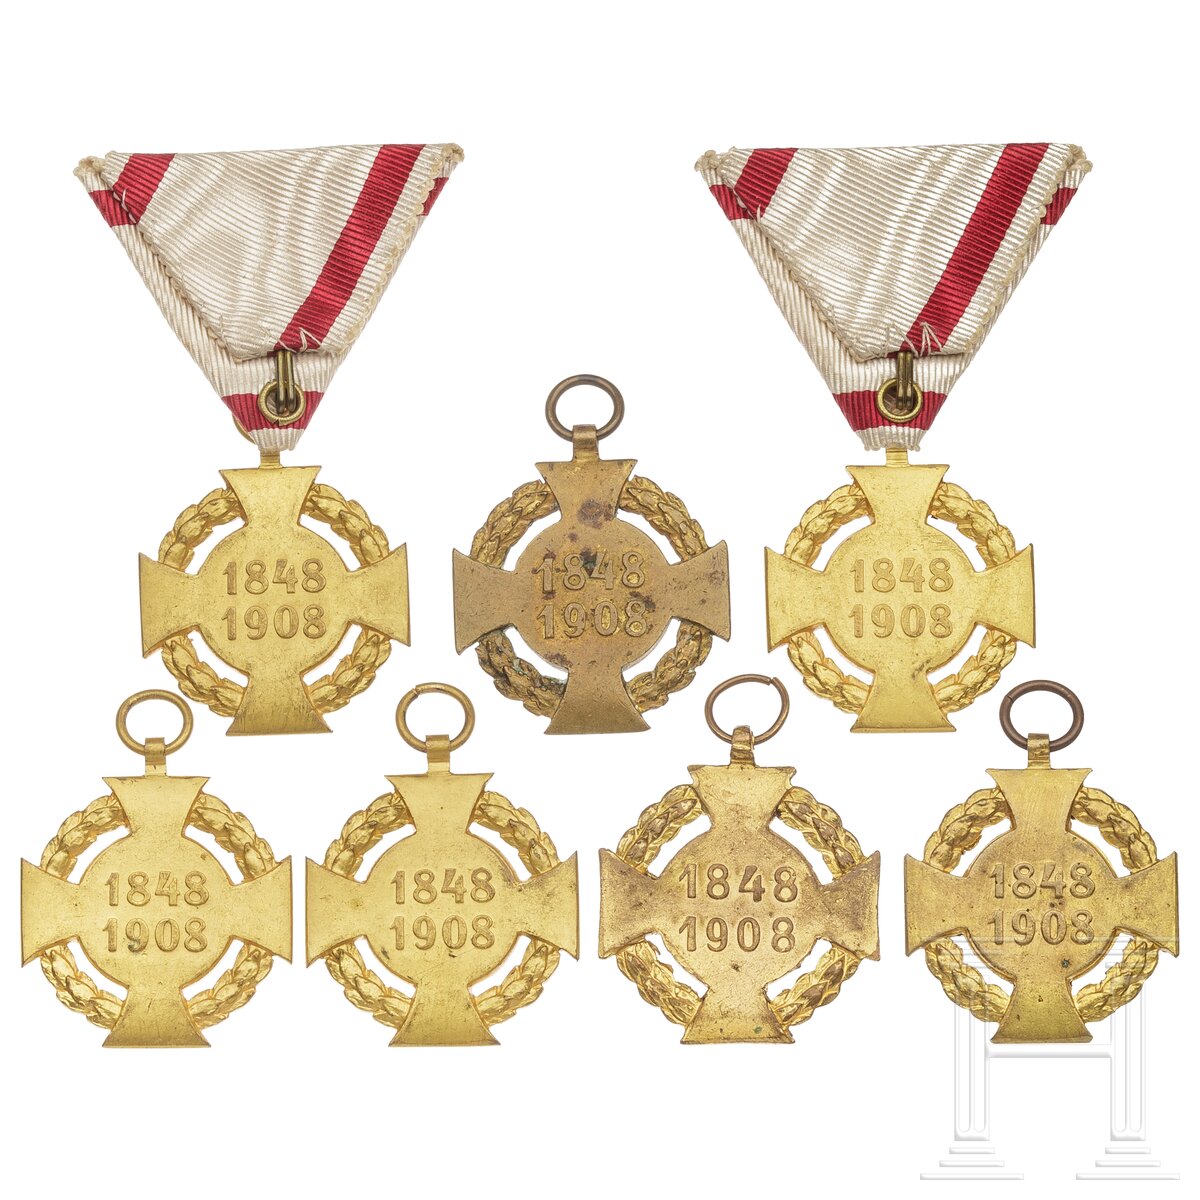 Sieben Jubiläums-Militärkreuze 1848 - 1908 und Bänder - Image 2 of 5